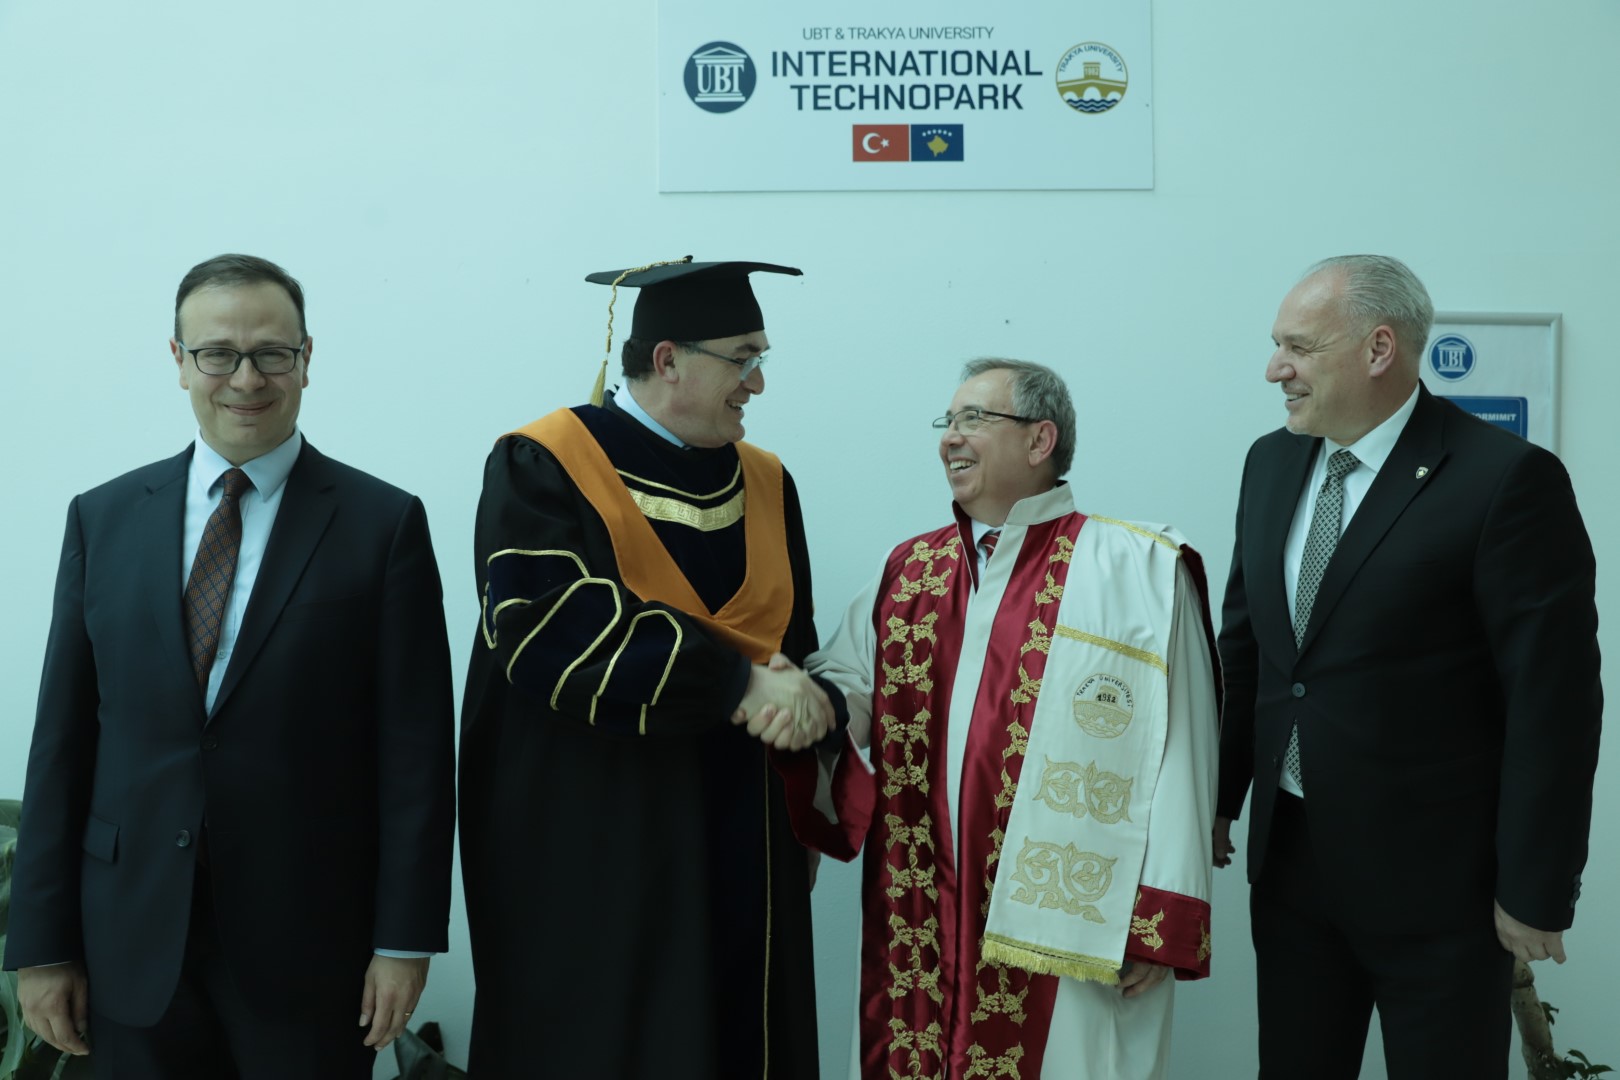 UBT ndan çmimin më të lartë institucional për Rektorin e Trakya Üniversitesi, Prof. Dr. Erhan Tabakoğlu dhe bën hapjen e Teknoparkut Ndërkombëtar